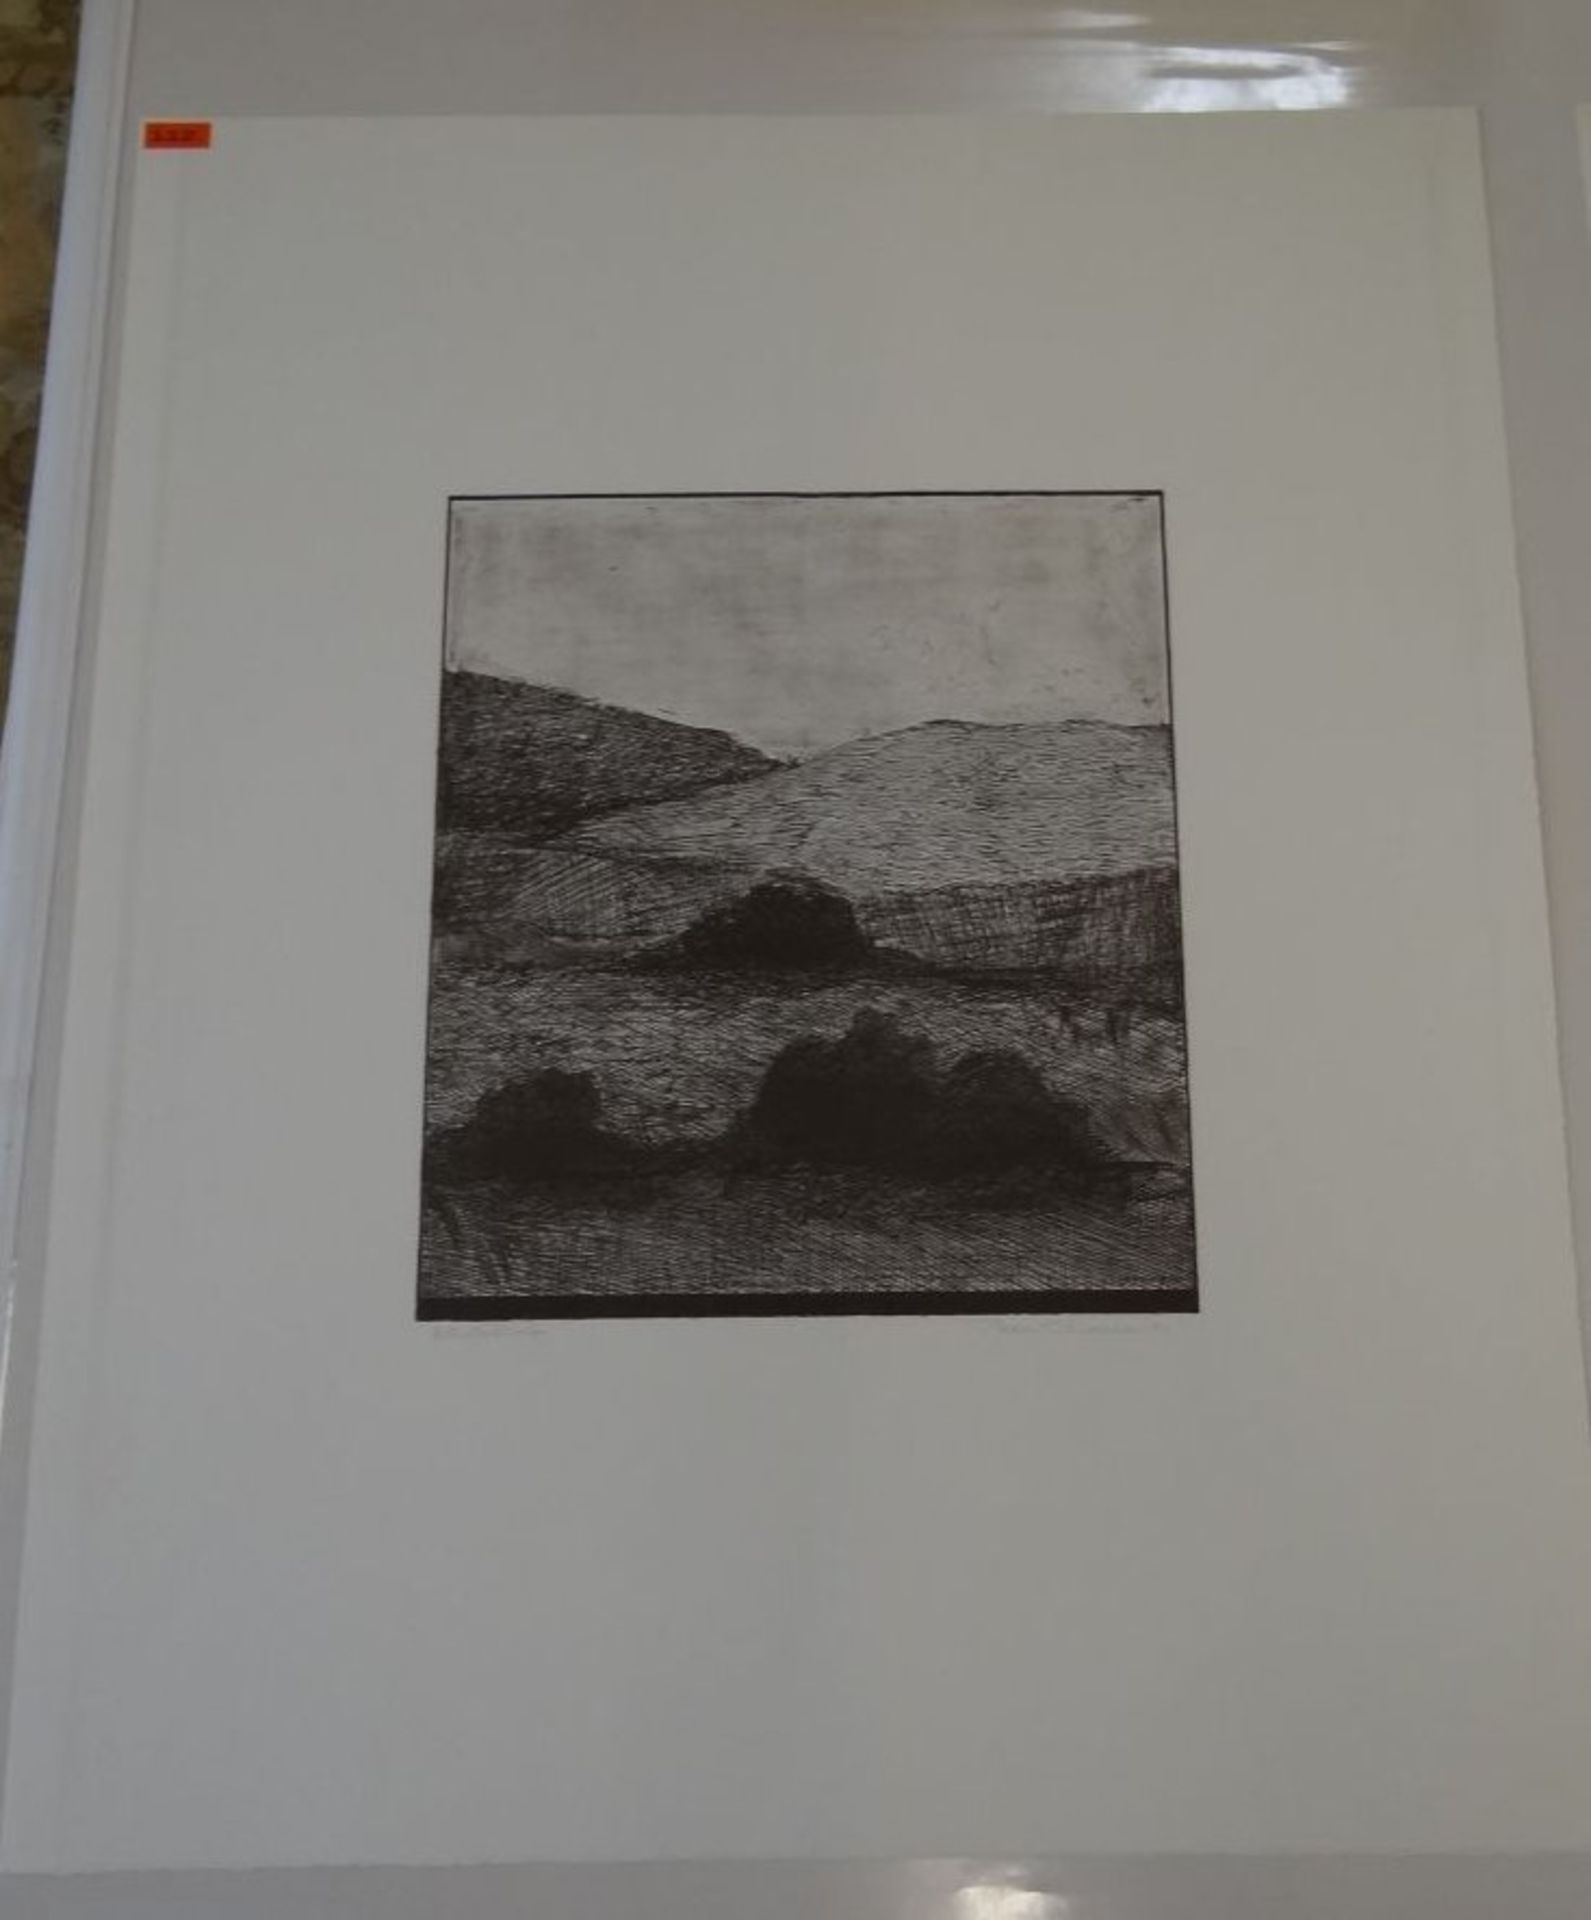 Thom. O'Connor, 1970 "Landschaft" Lithografie E.A proof, BG 55x45 cm